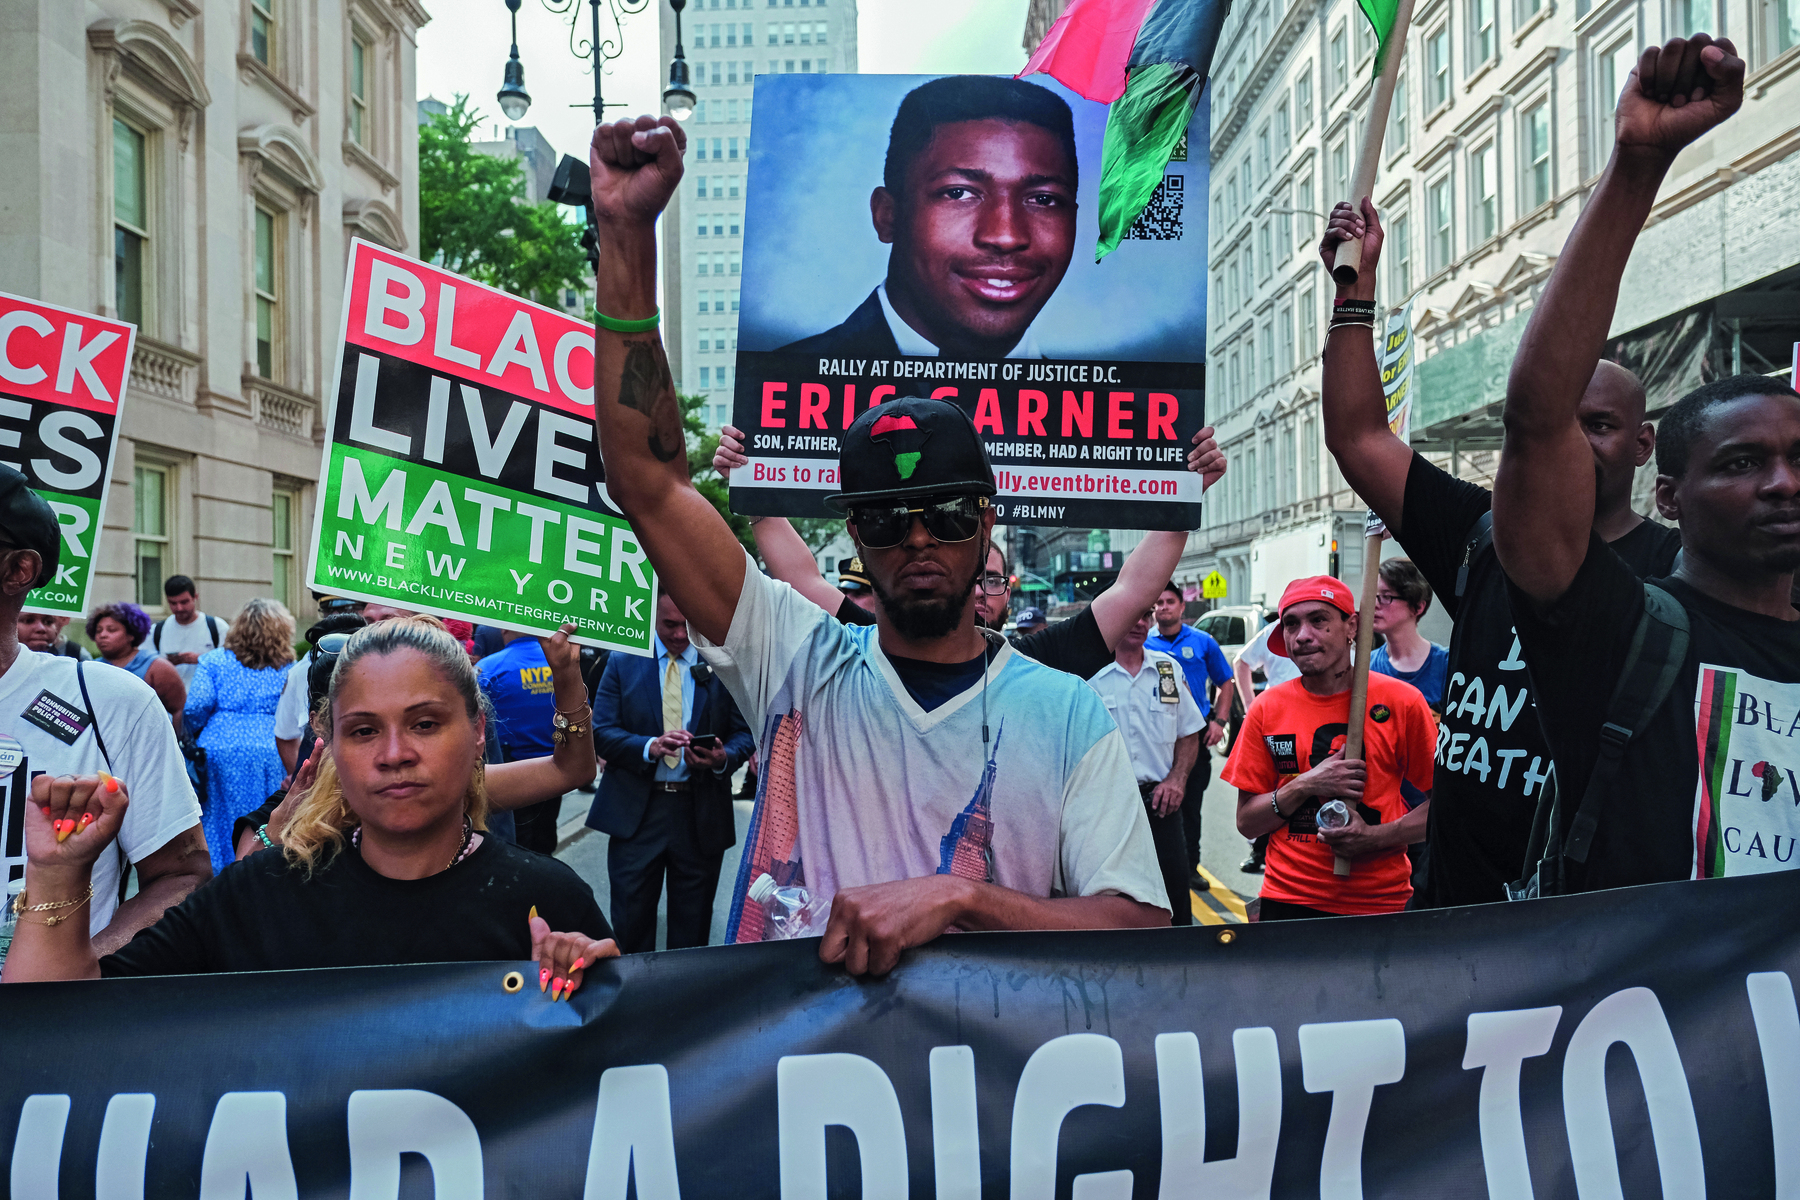 Fotografia. Grupo de pessoas em um protesto. Carregam cartazes com palavras de ordem. Em um dos cartazes a foto de Eric Garner, rapaz negro.